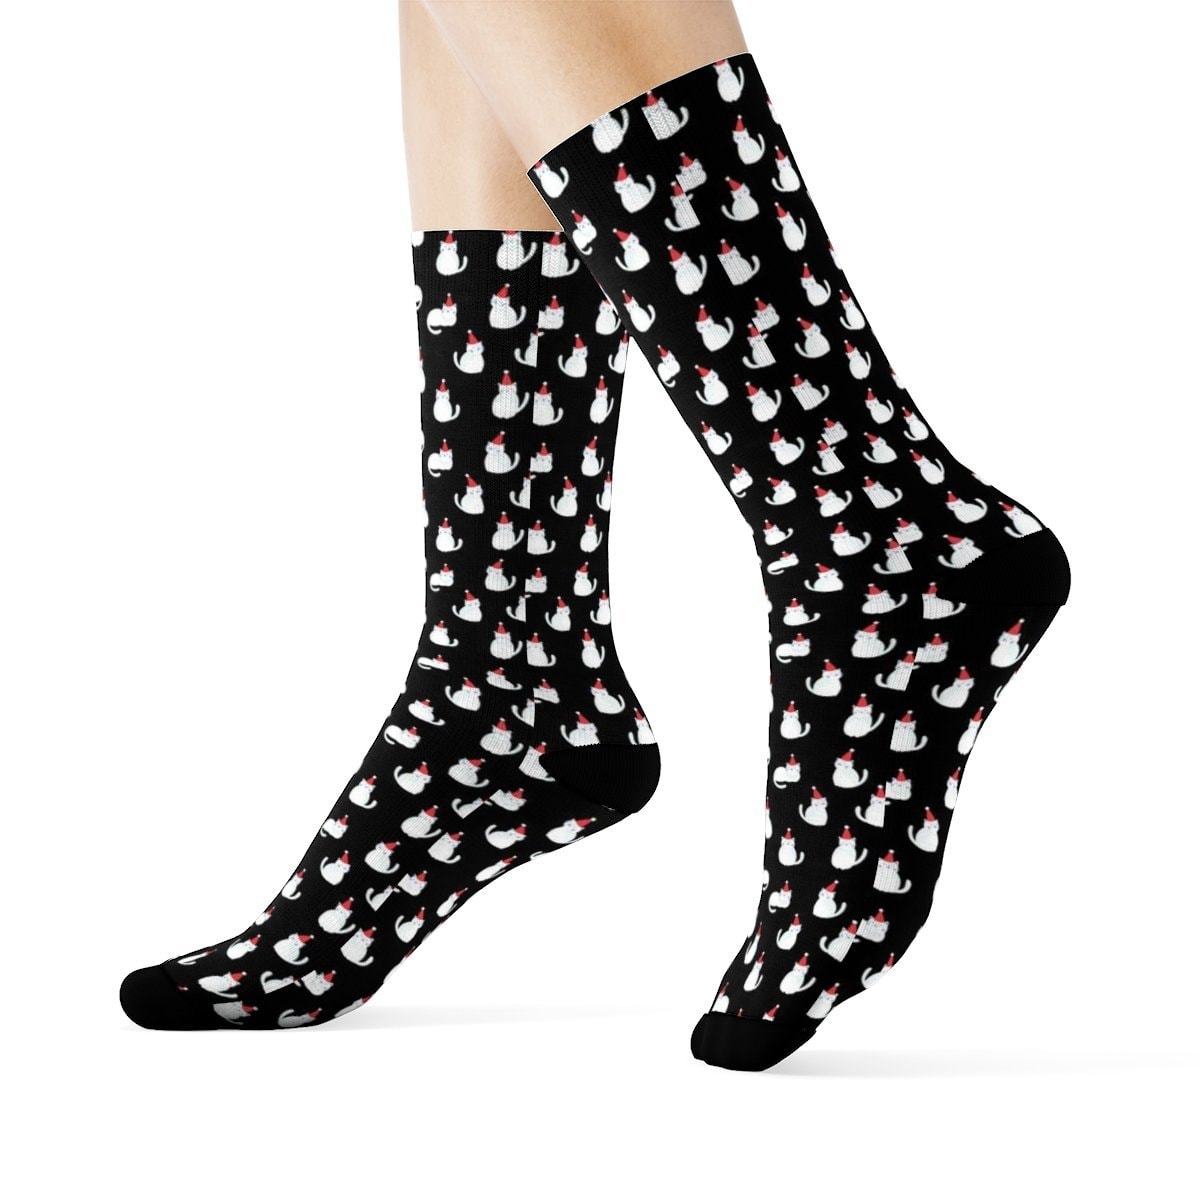 Womens Cat Socks, Cute Cat Socks Featuring Christmas Themed Print